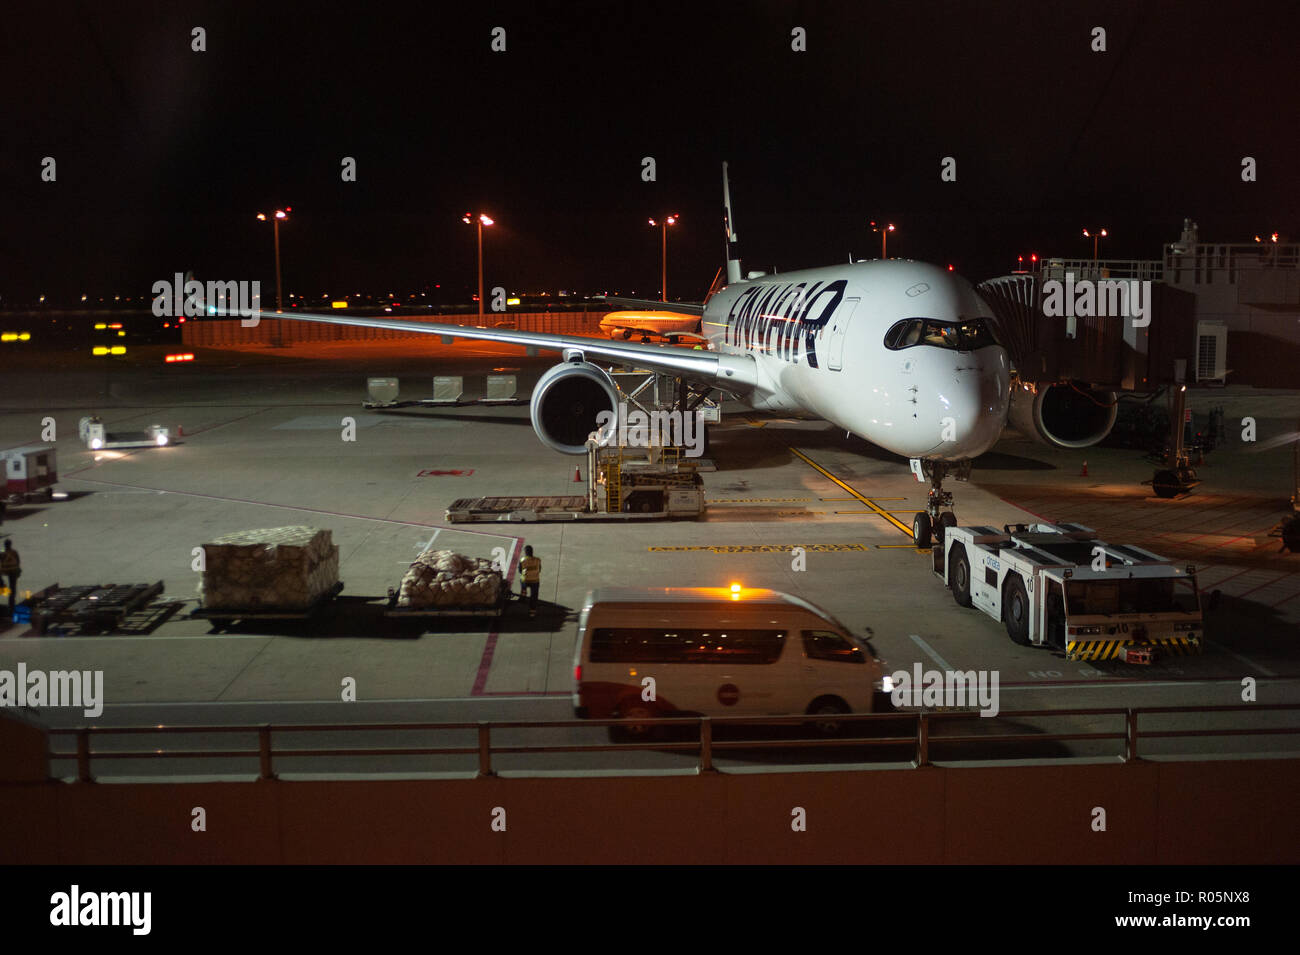 03.06.2018 - Singapur, República de Singapur, Asia - un Airbus A350 de Finnair pasajero avión está estacionado en una puerta en el aeropuerto de Changi de Singapur. Foto de stock